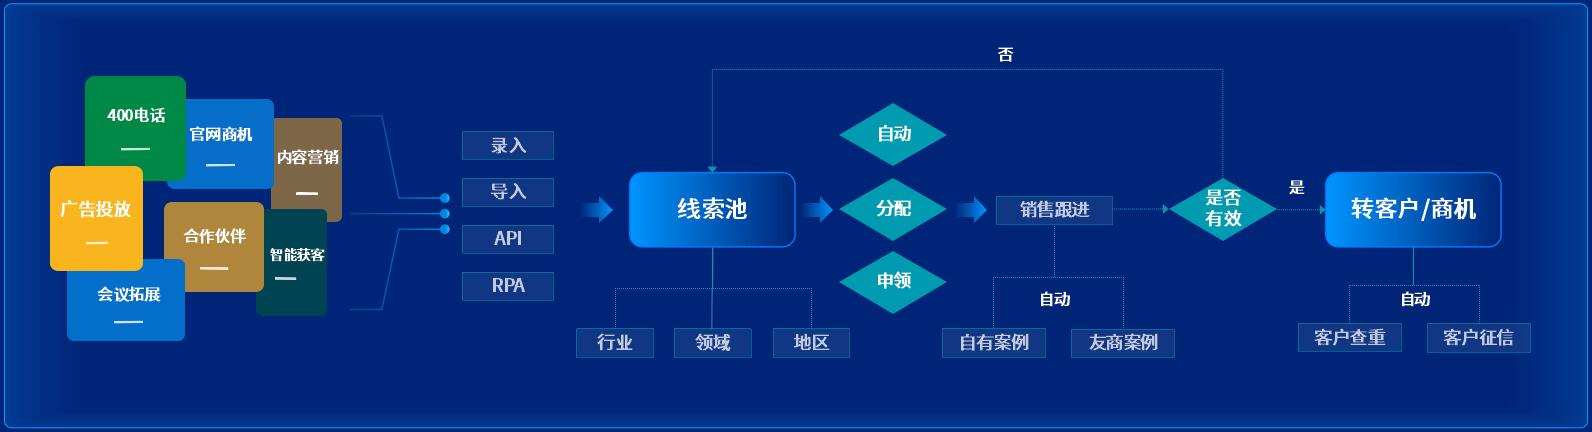 泛微发布数字化营销管理平台-九川汇